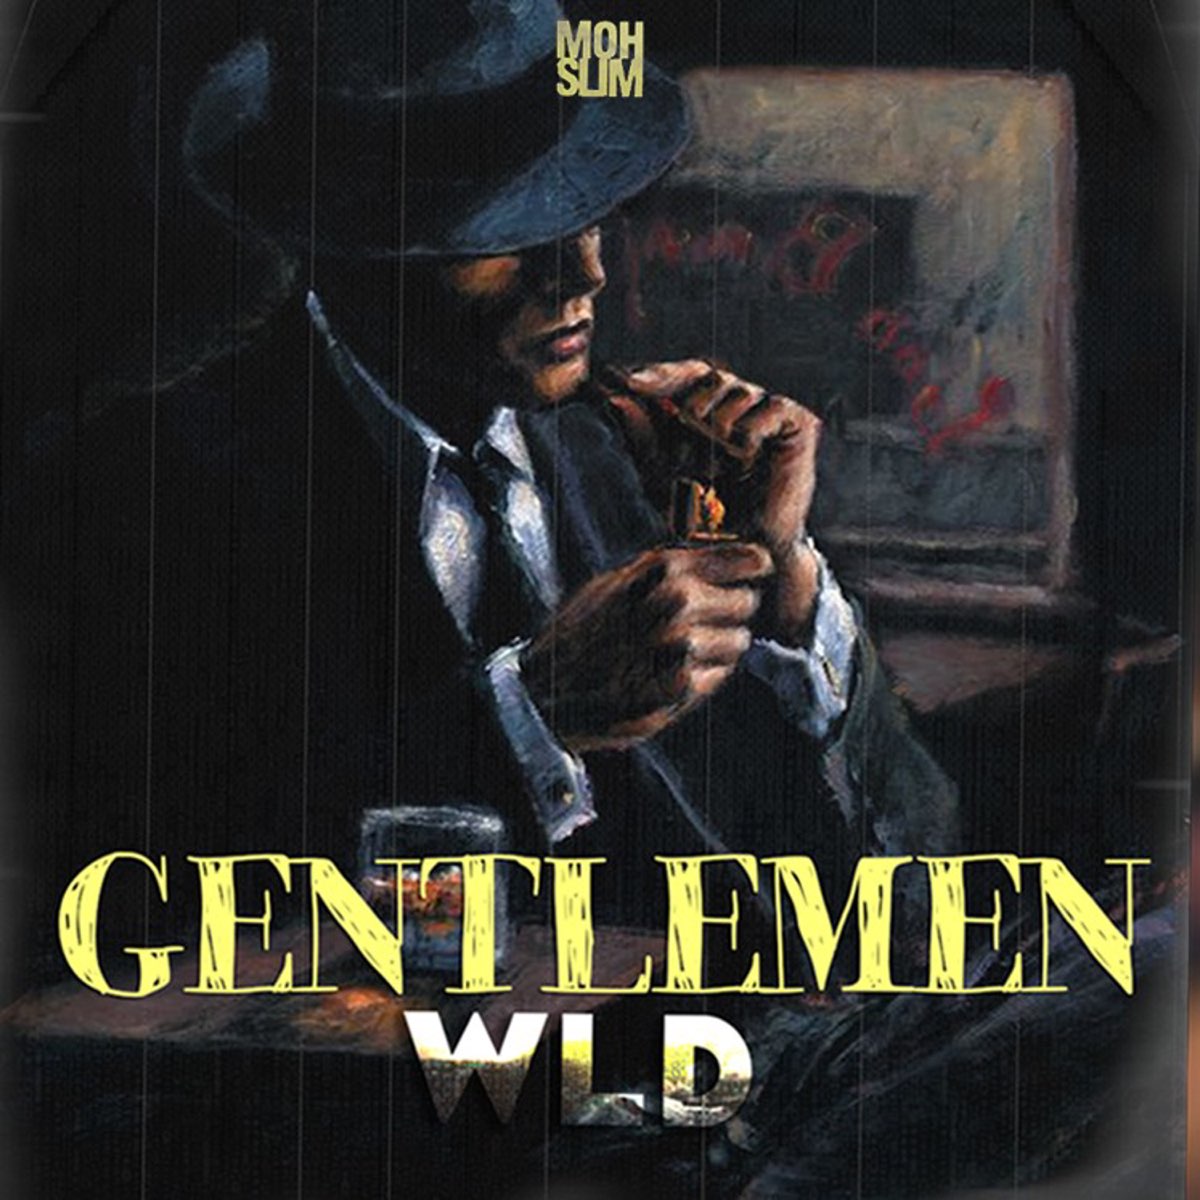 Слушать музыку джентльмен. Альбом джентльмены. Джентльмен сингл. Джентльмены альбом 2019. Песня Gentleman.